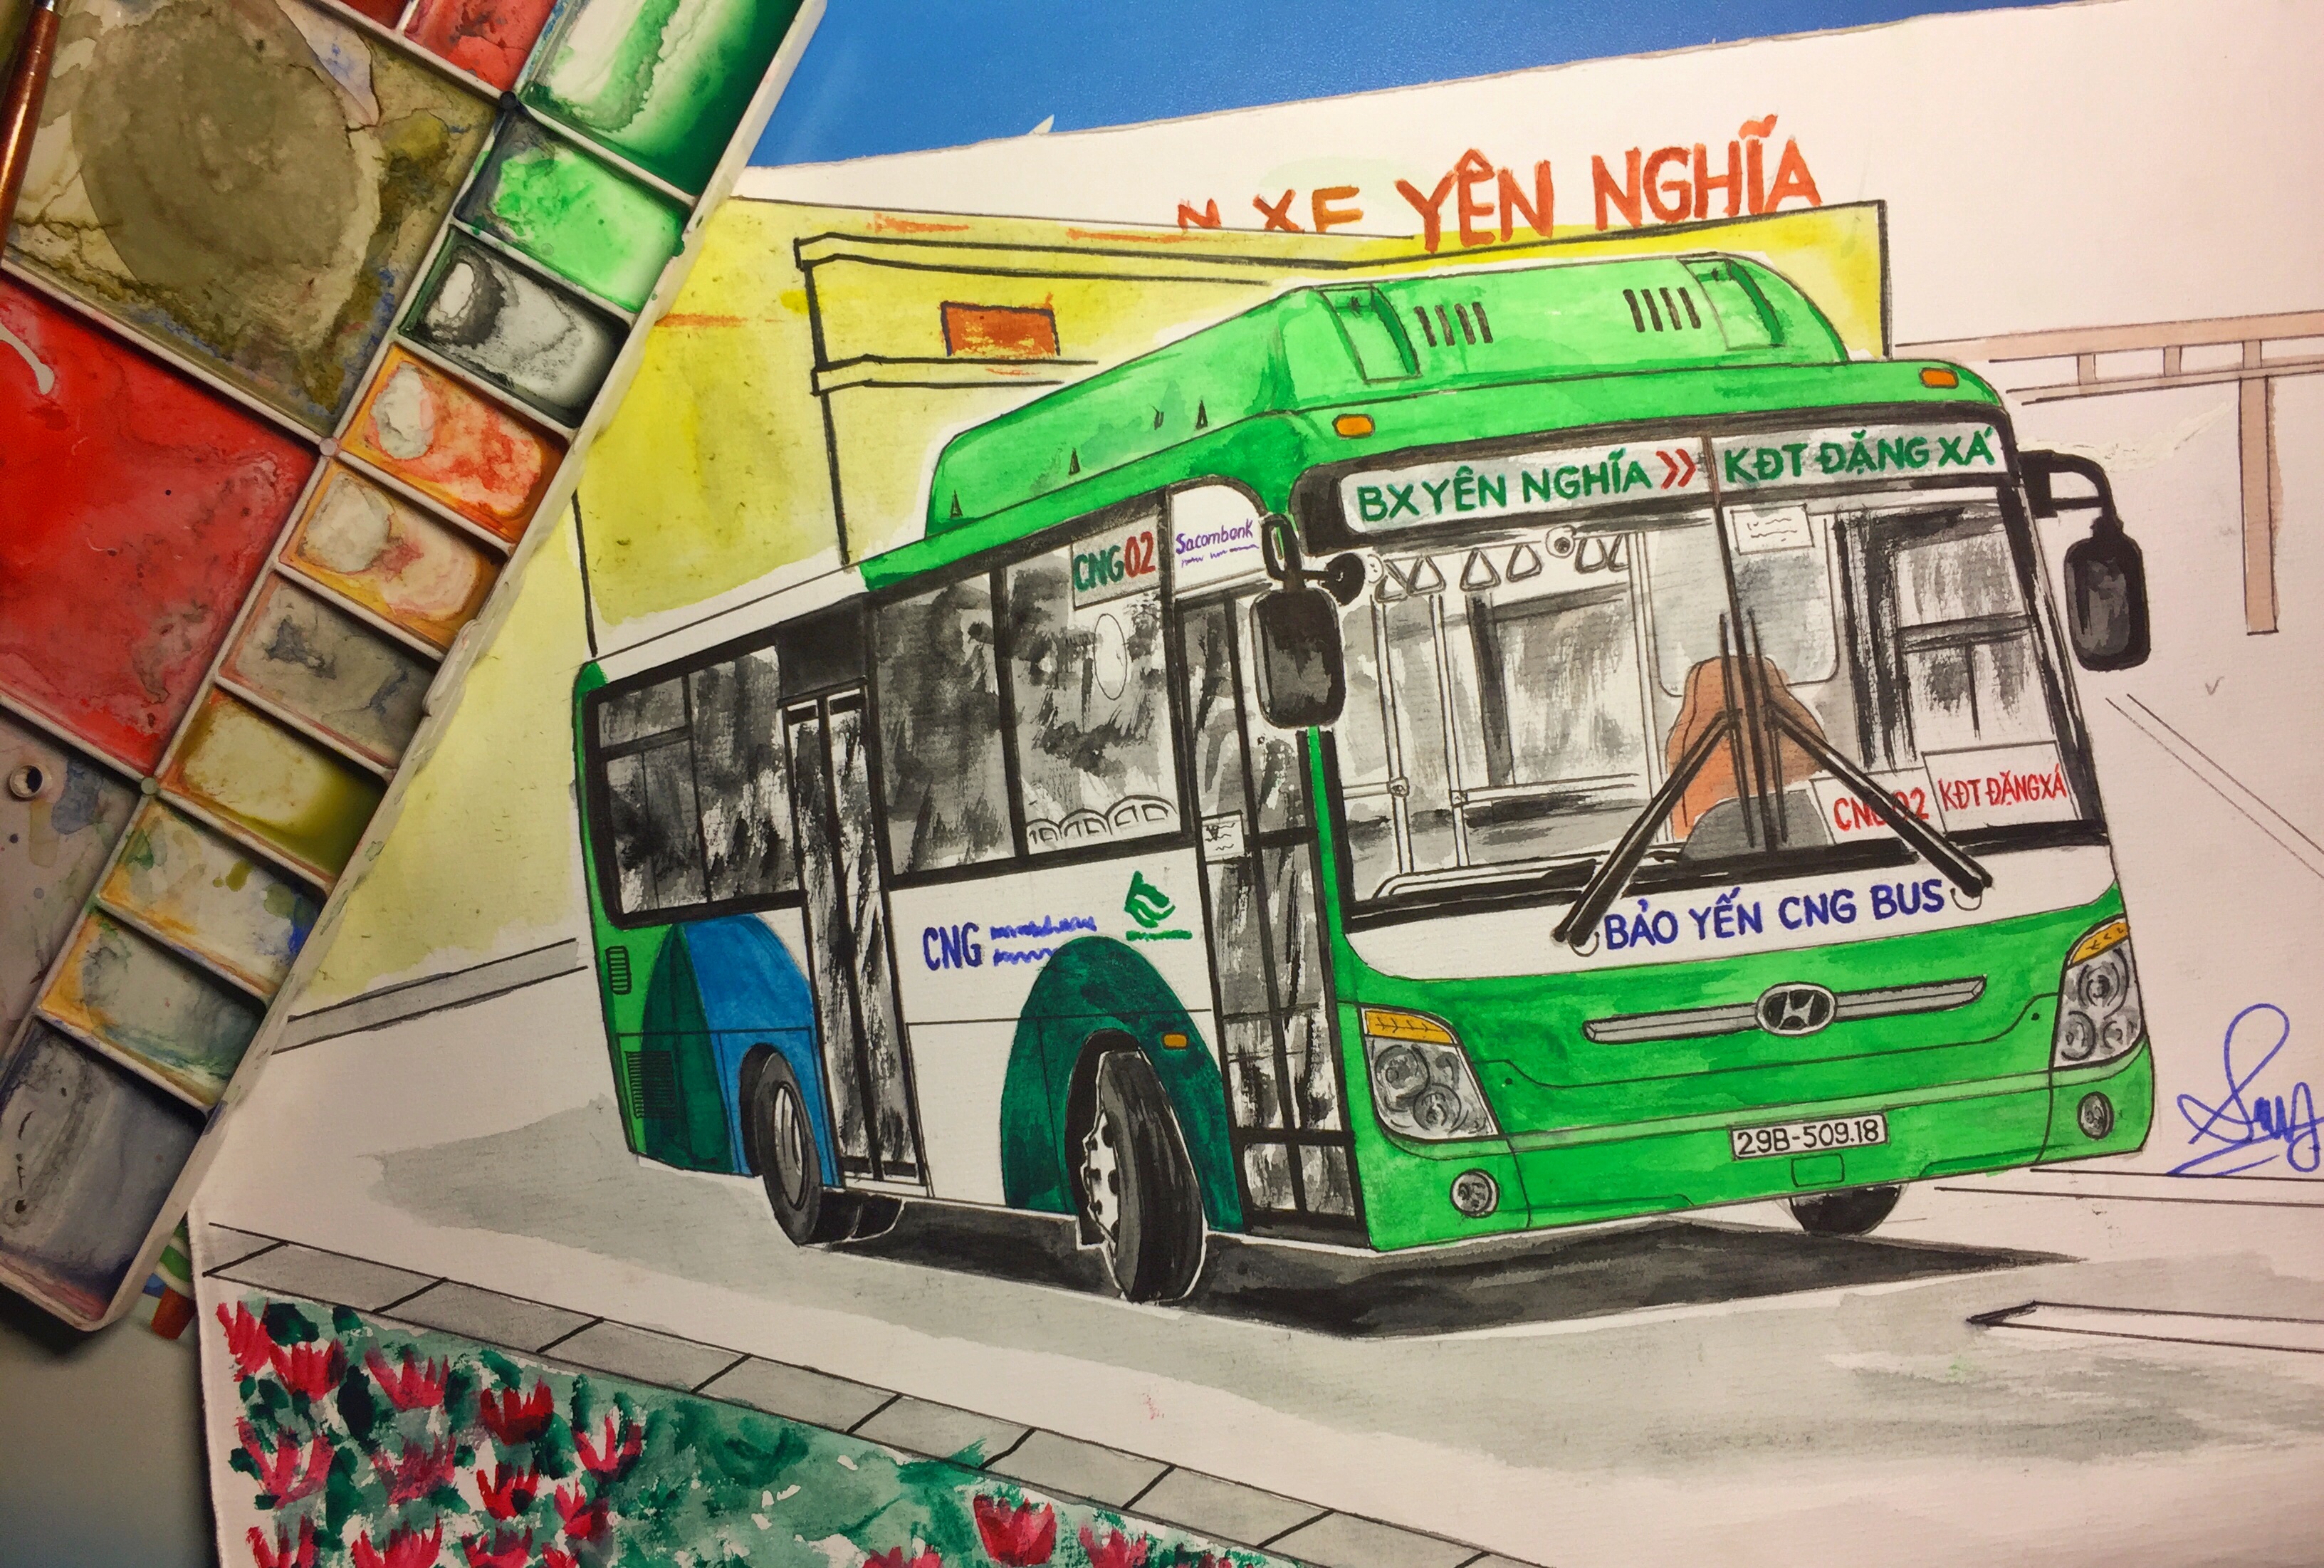 Trải nghiệm những chuyến đi đầy màu sắc trên những chiếc xe buýt Hà Nội đặc trưng của thành phố, để lại trong lòng những kỉ niệm đáng nhớ về môi trường sống đa dạng và phong phú.